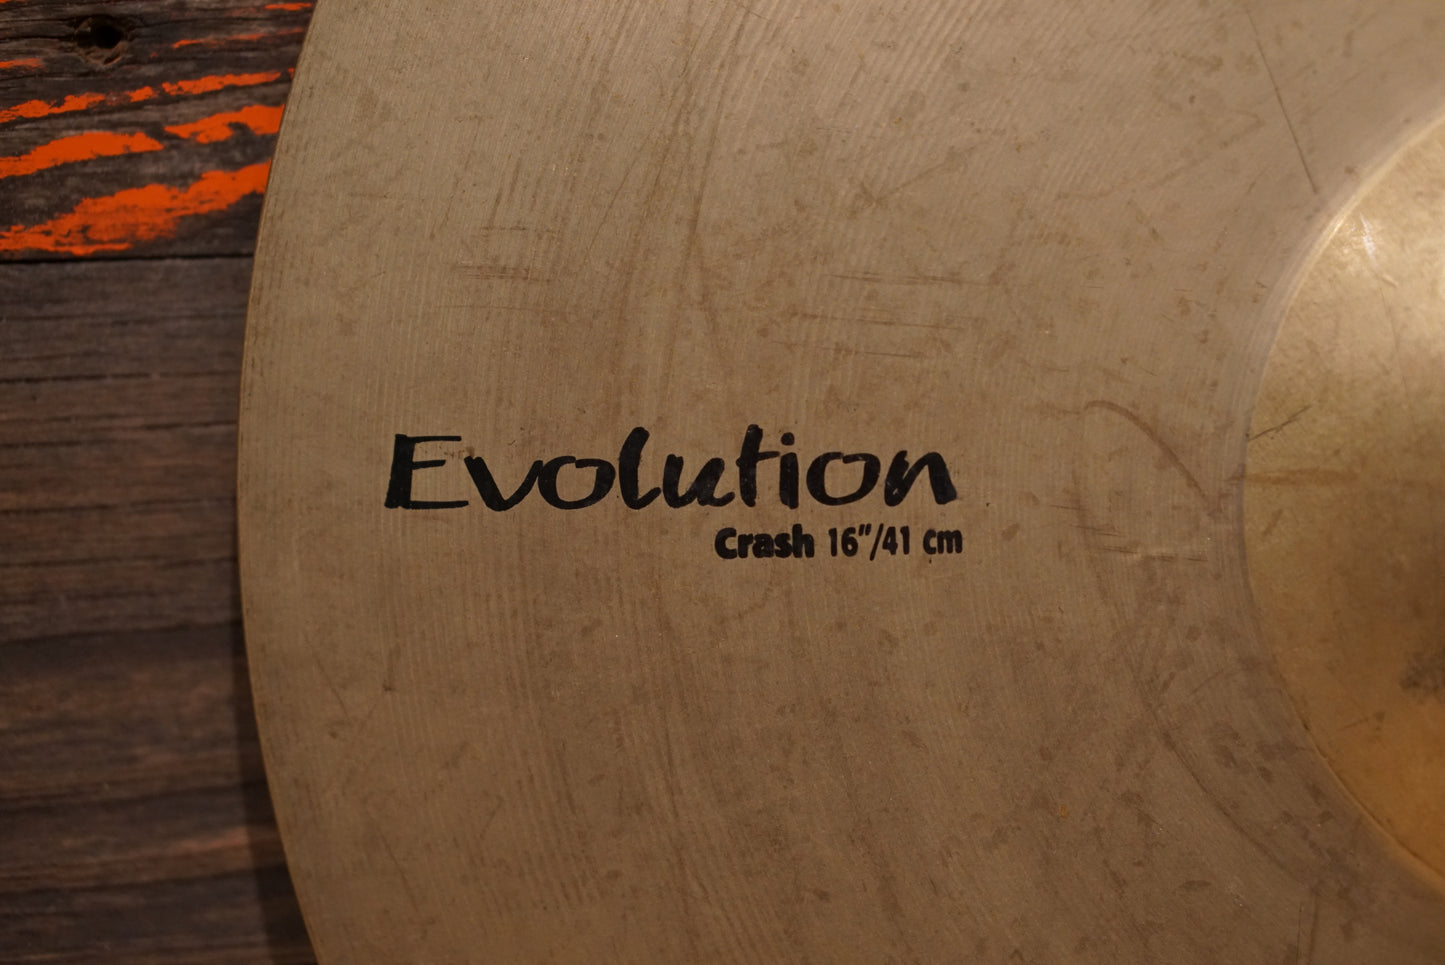 Sabian 16" HHX Evolution Crash Cymbal - 832g